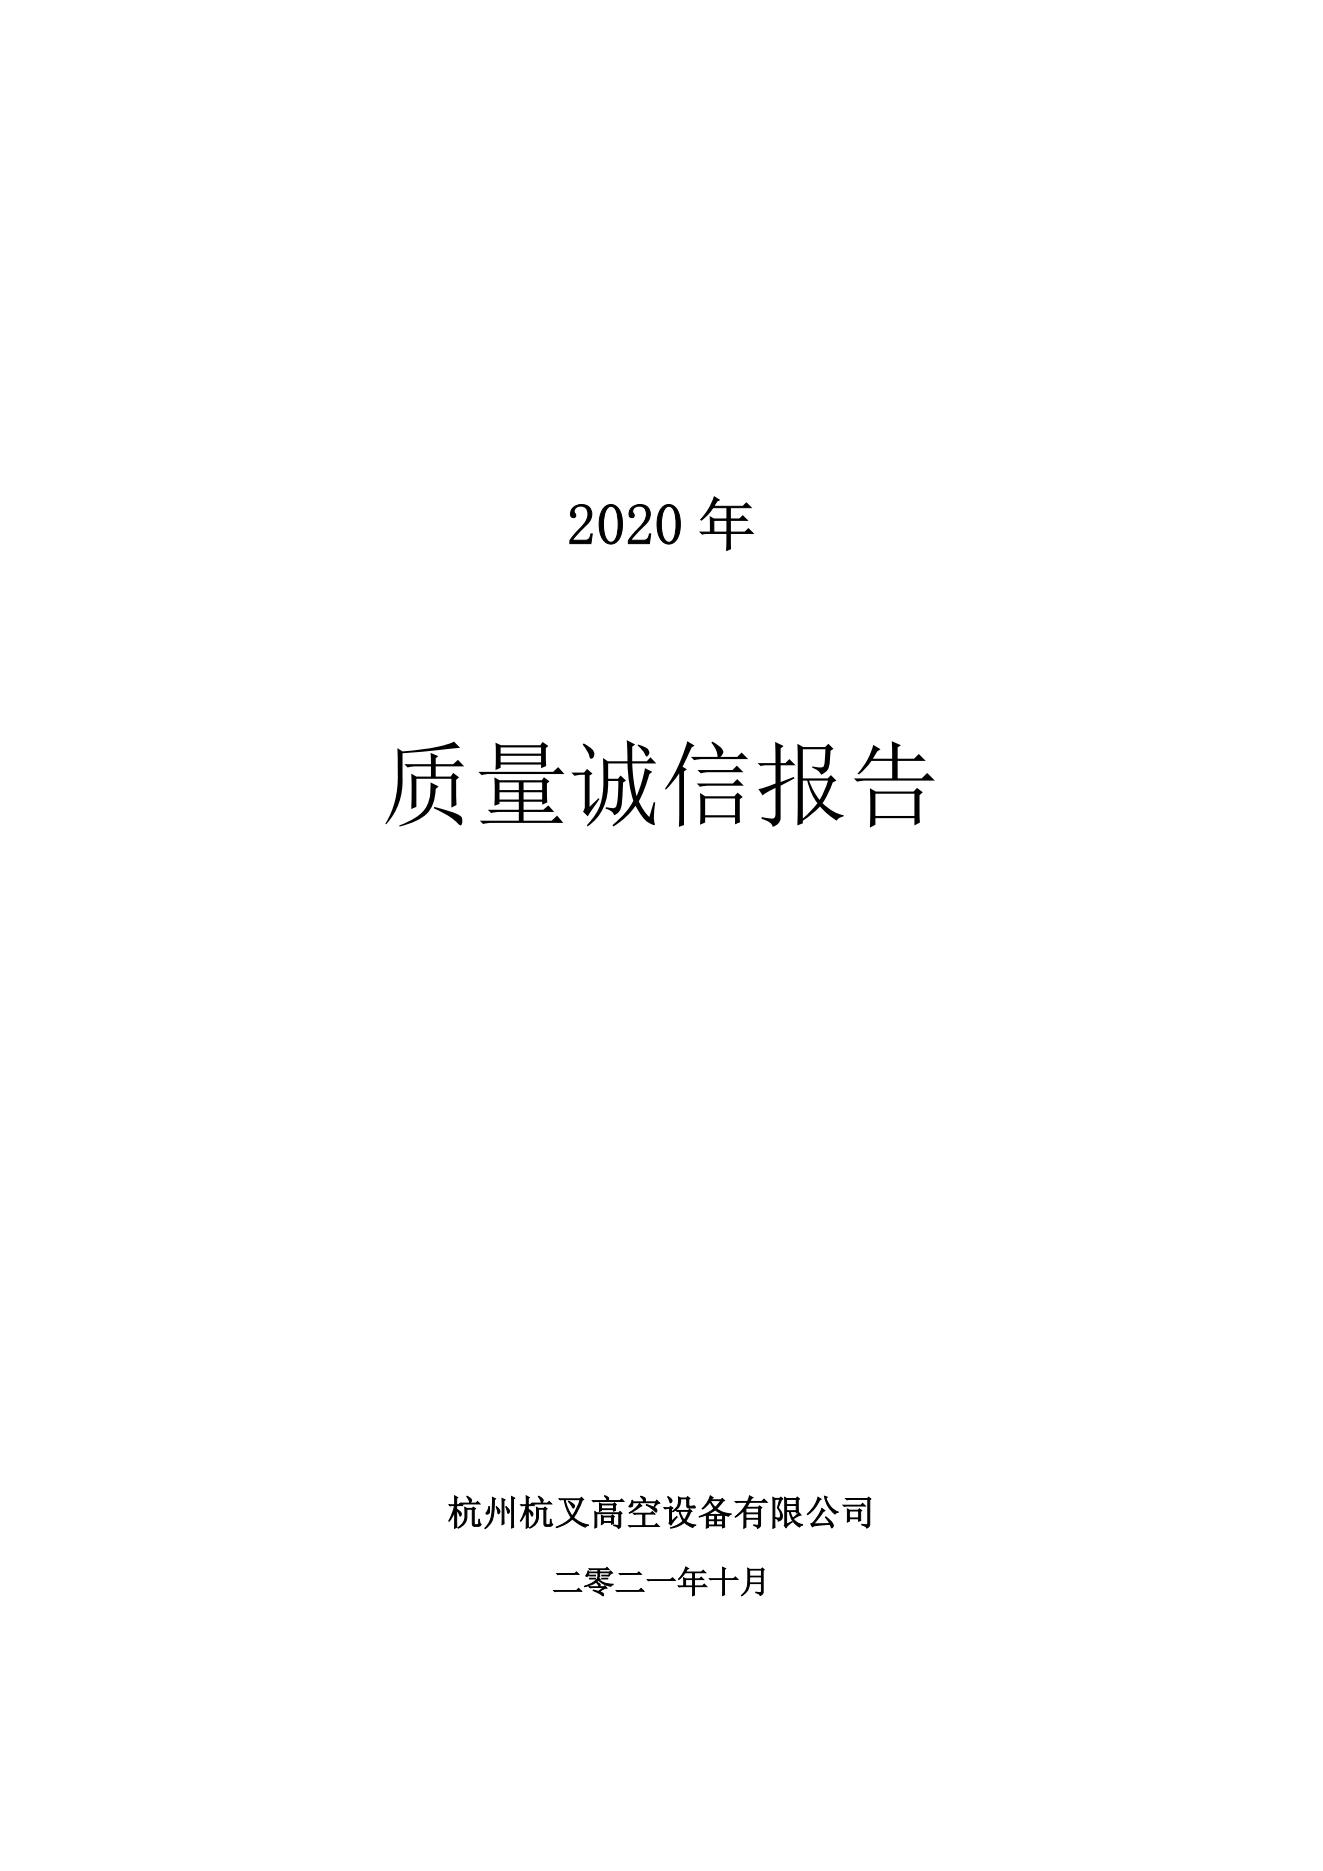 2021年質量誠信報告(圖1)